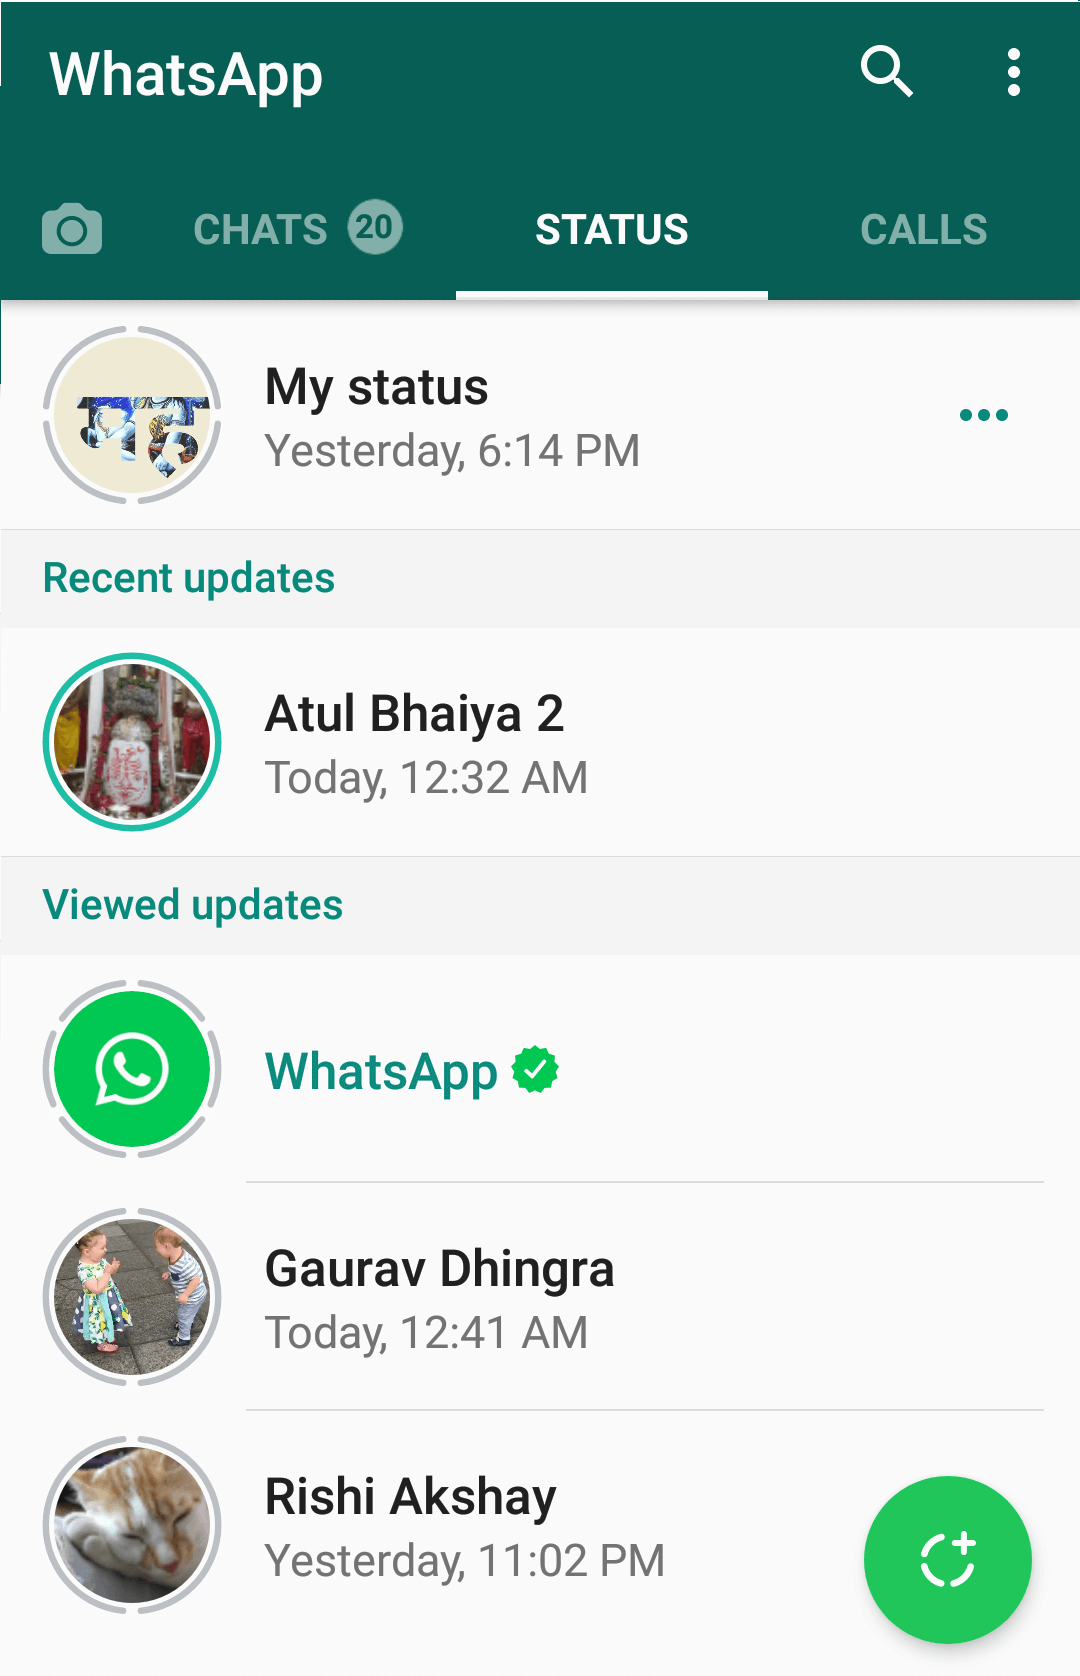 Whatsapp status feature